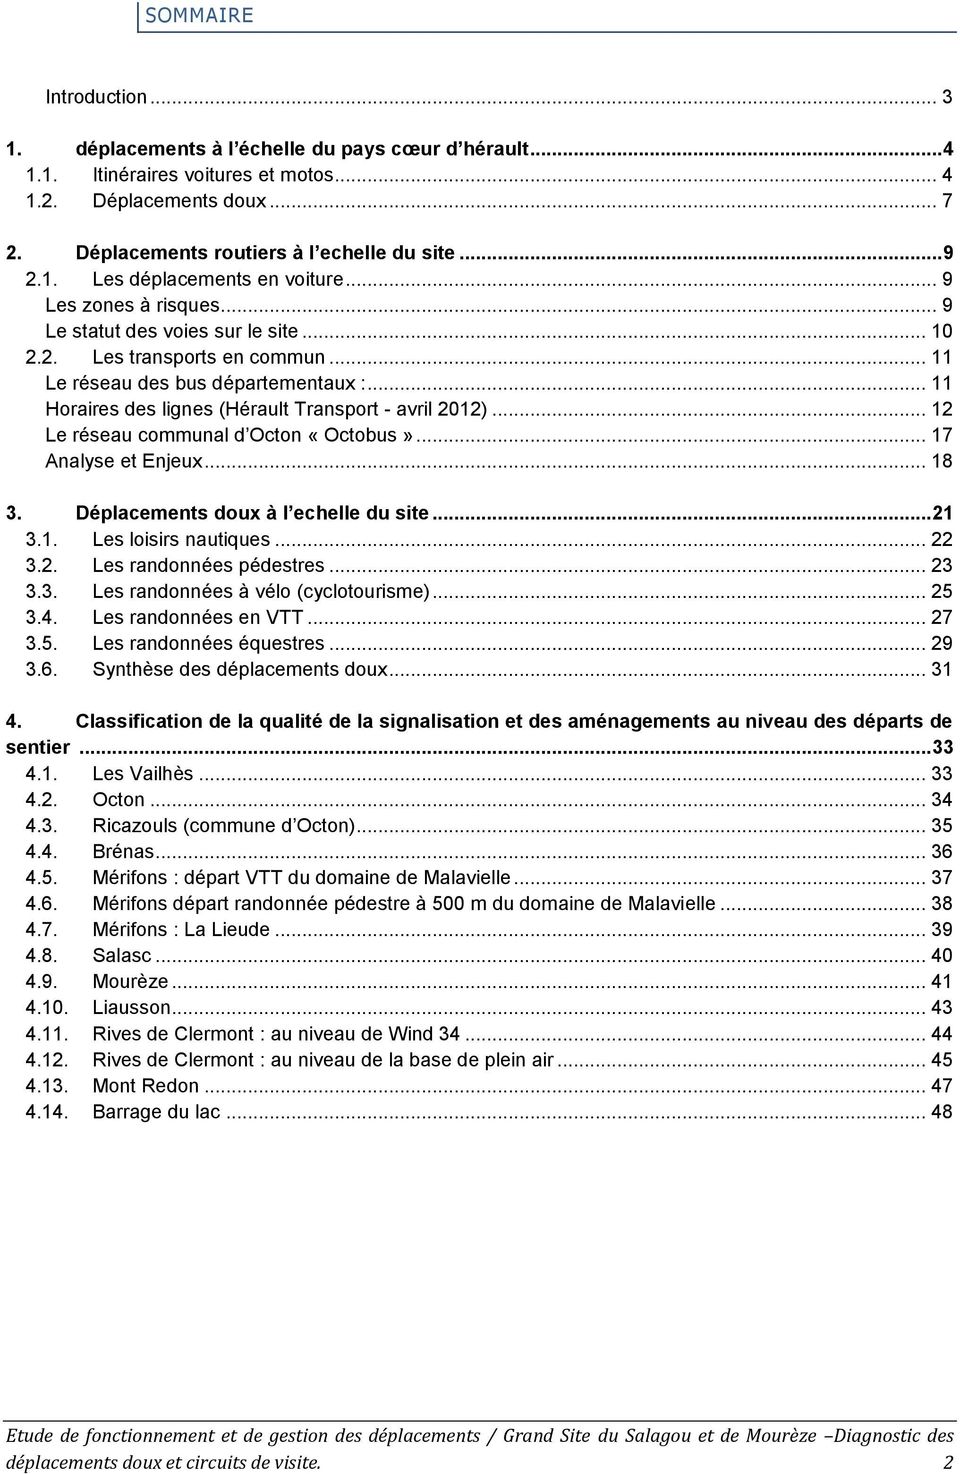 .. 11 Horaires des lignes (Hérault Transport - avril 2012)... 12 Le réseau communal d Octon «Octobus»... 17 Analyse et Enjeux... 18 3. Déplacements doux à l echelle du site... 21 3.1. Les loisirs nautiques.